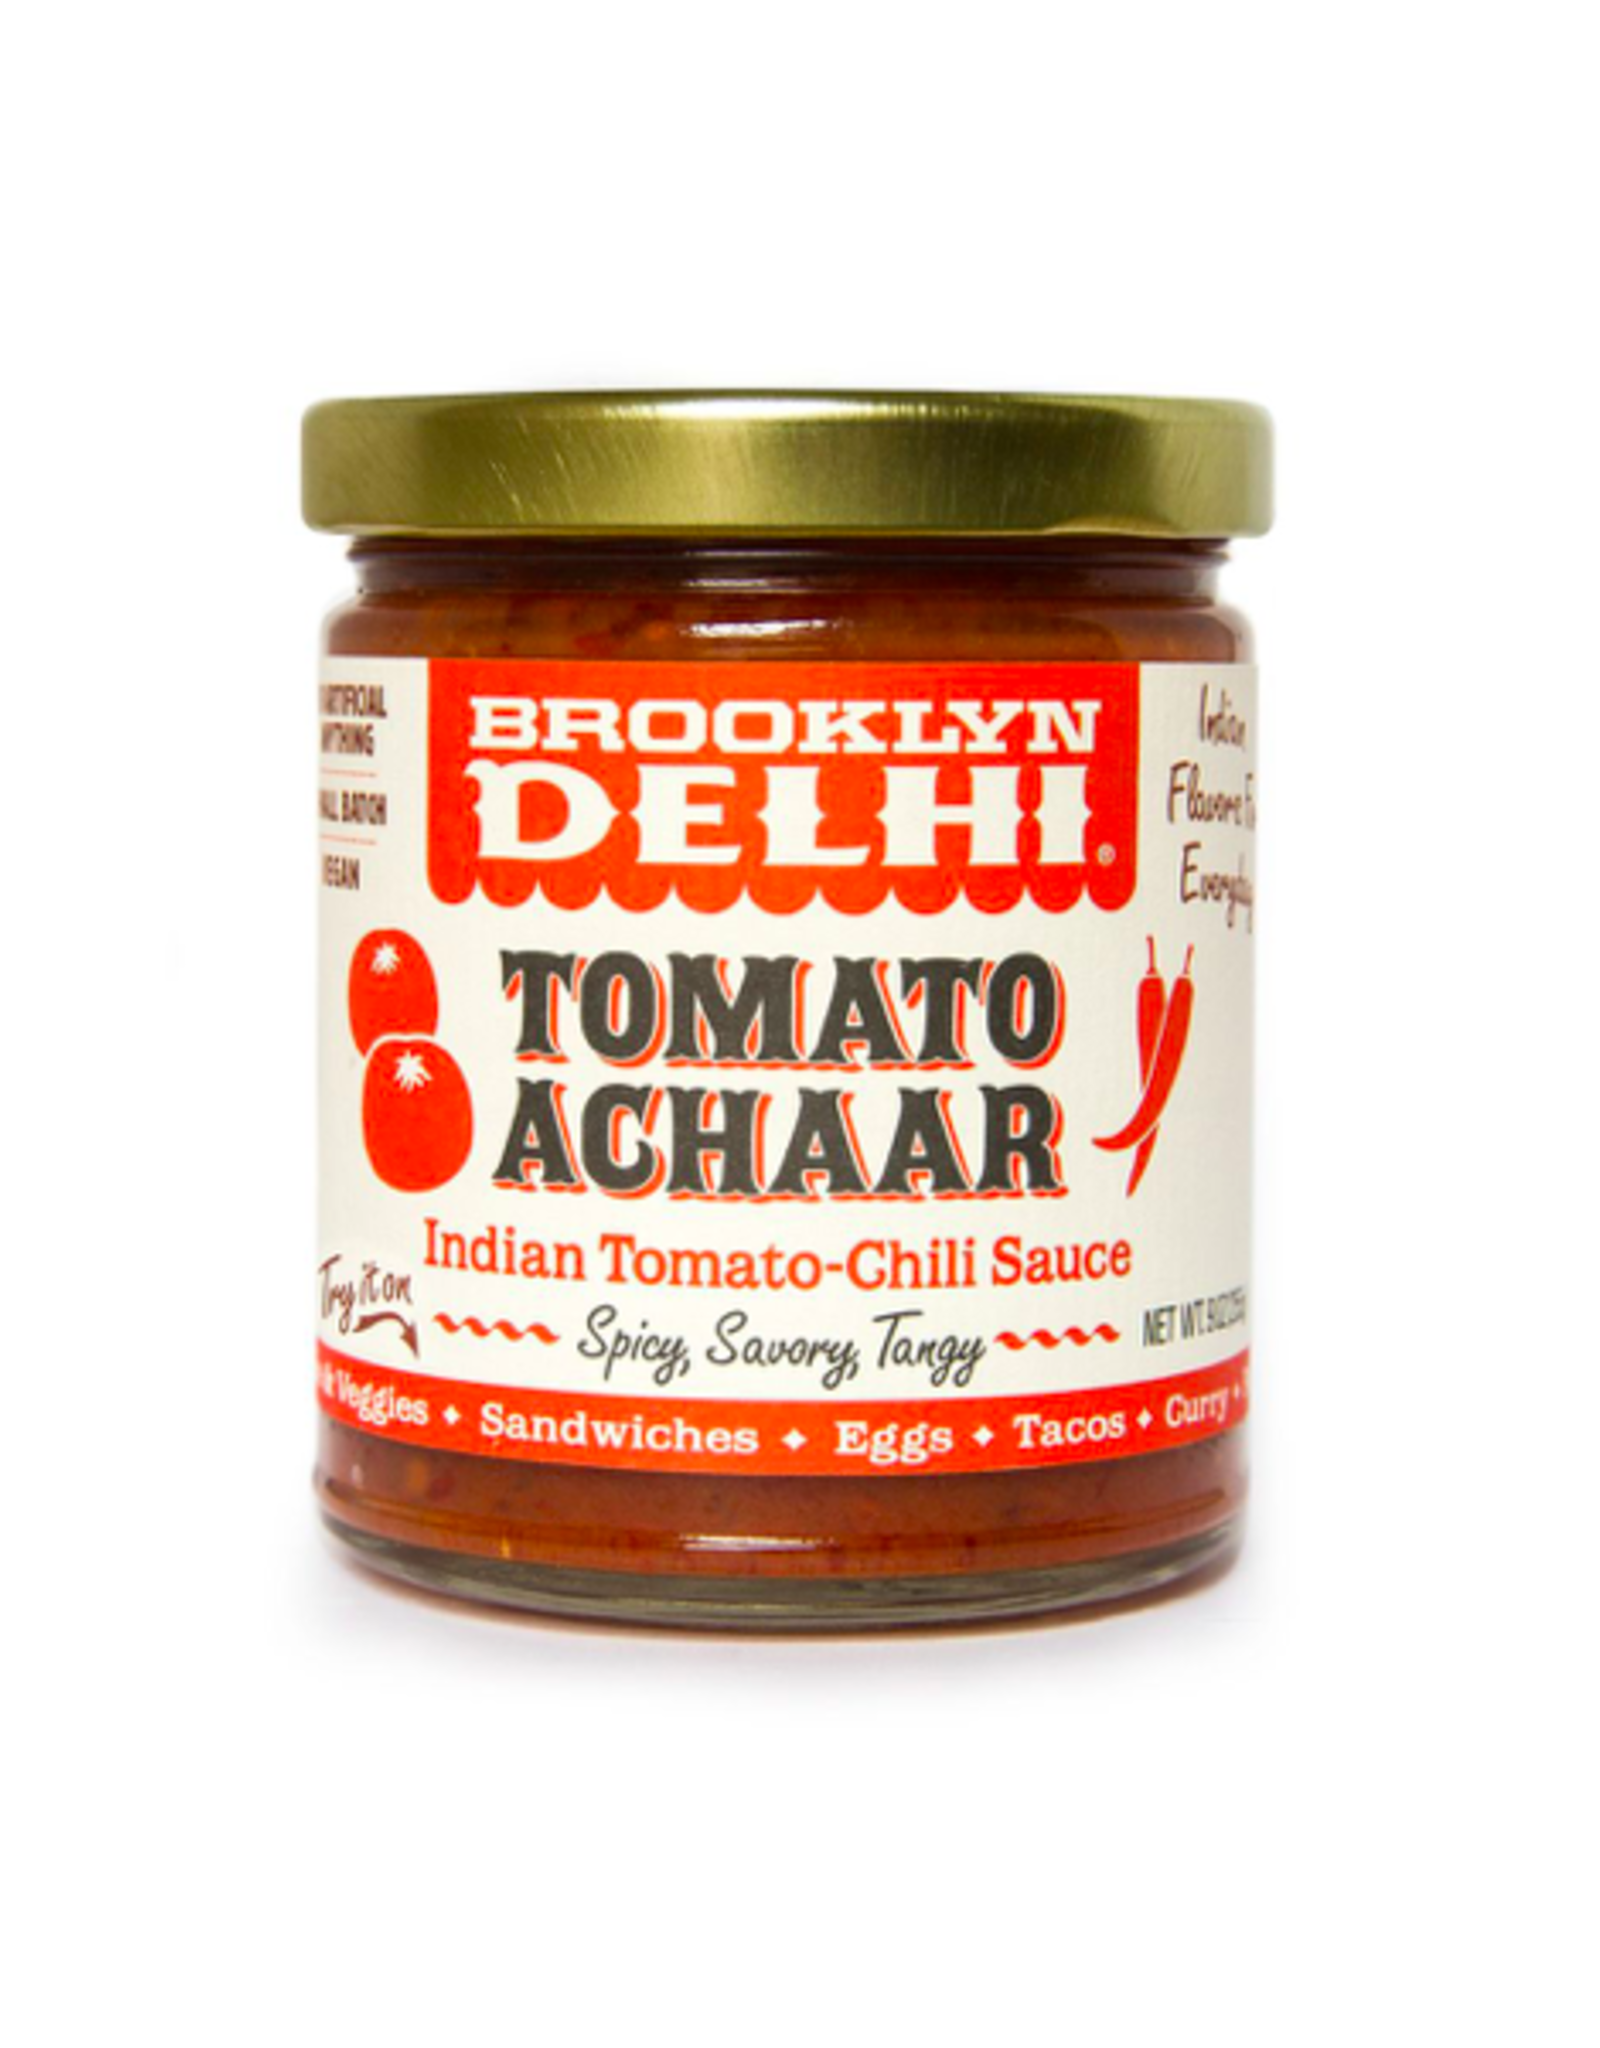 DLE - Brooklyn Delhi / Tomato Achaar, 9oz